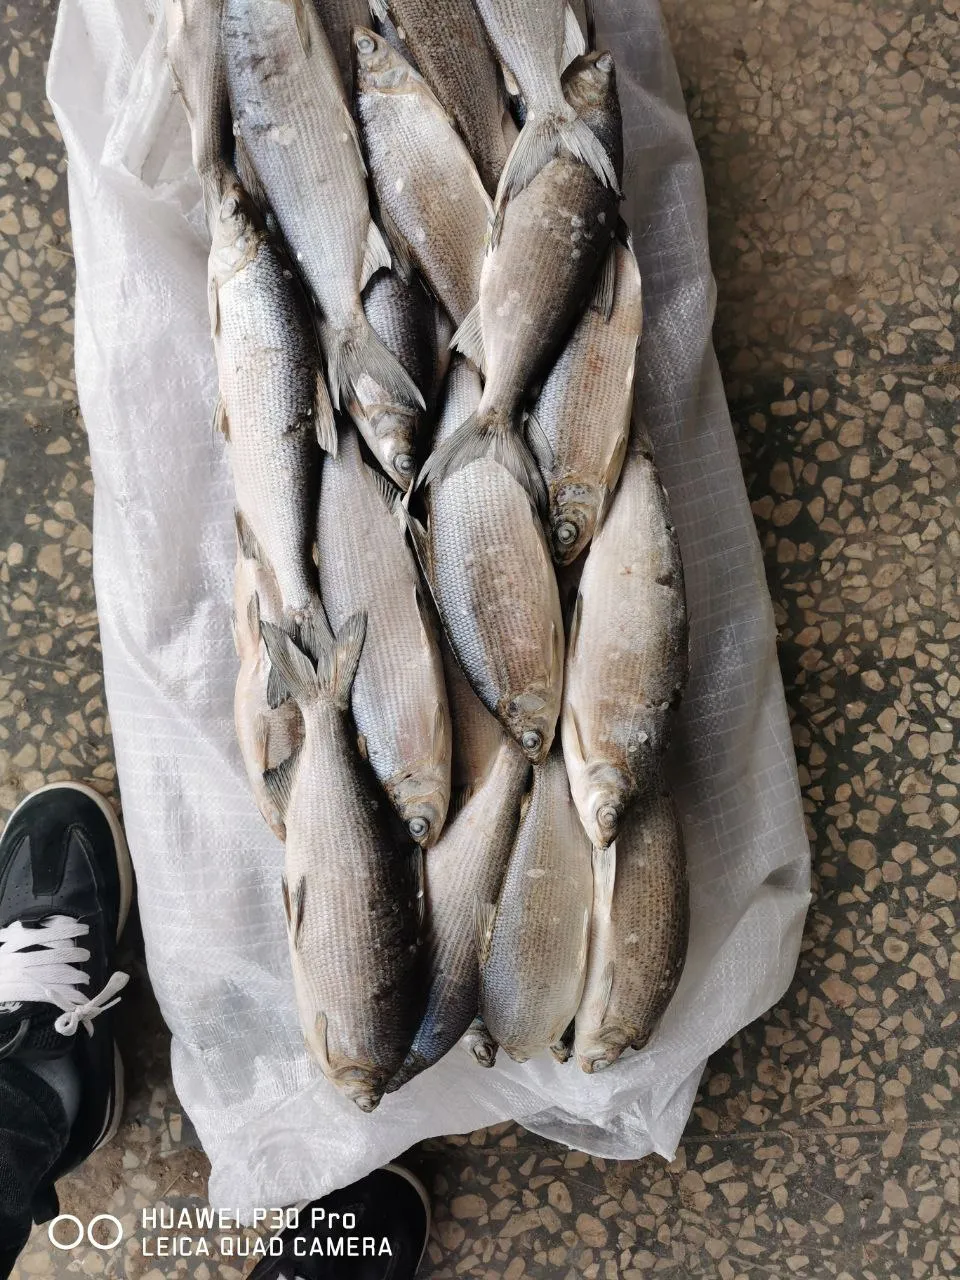 речную рыбу опт в Новосибирске 9